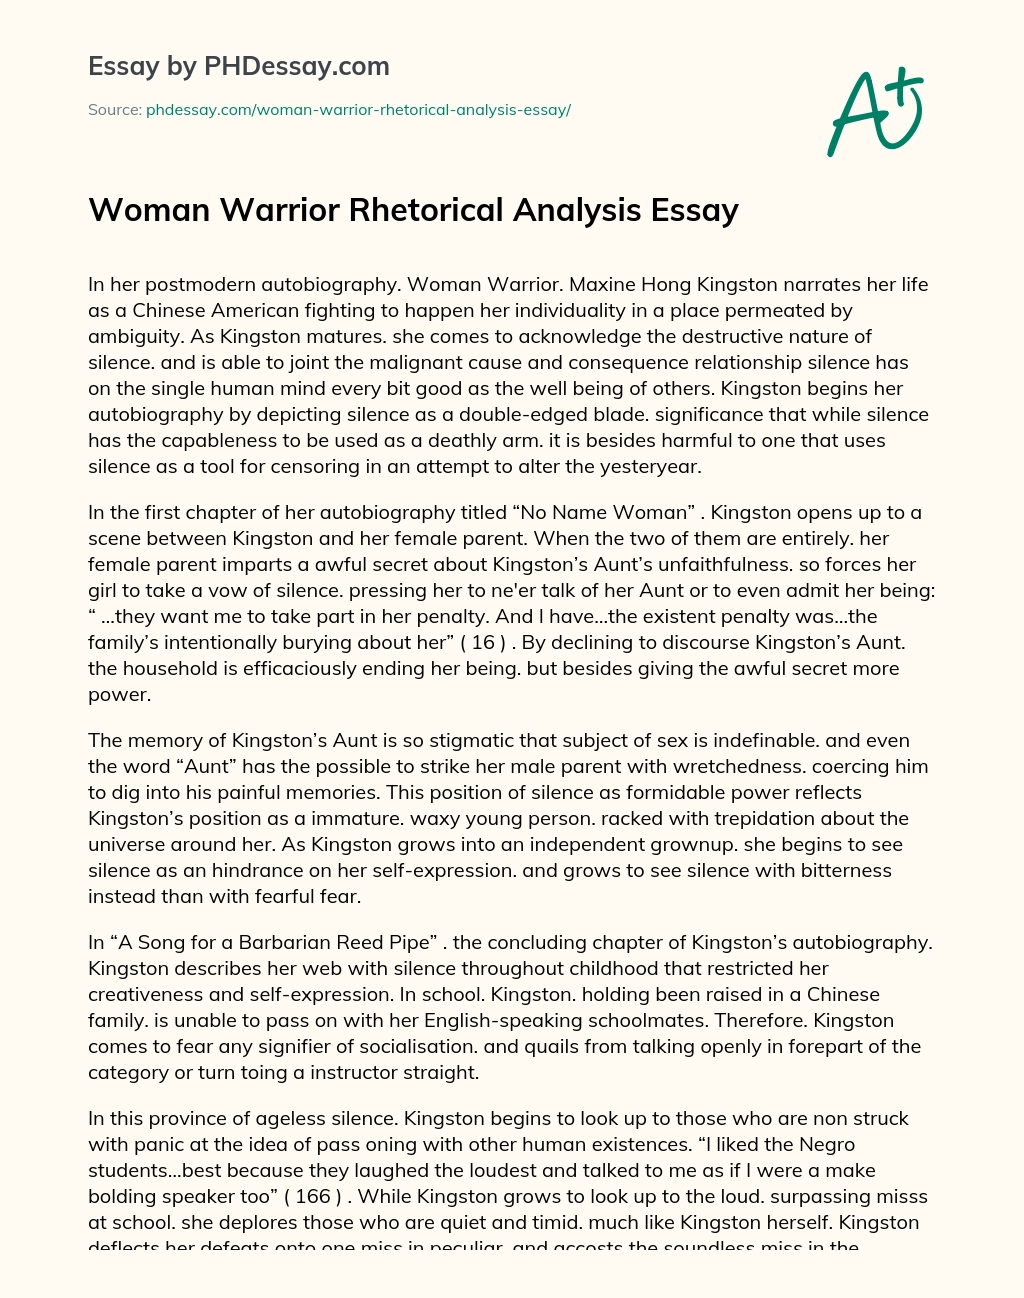 Woman Warrior Rhetorical Analysis Essay essay